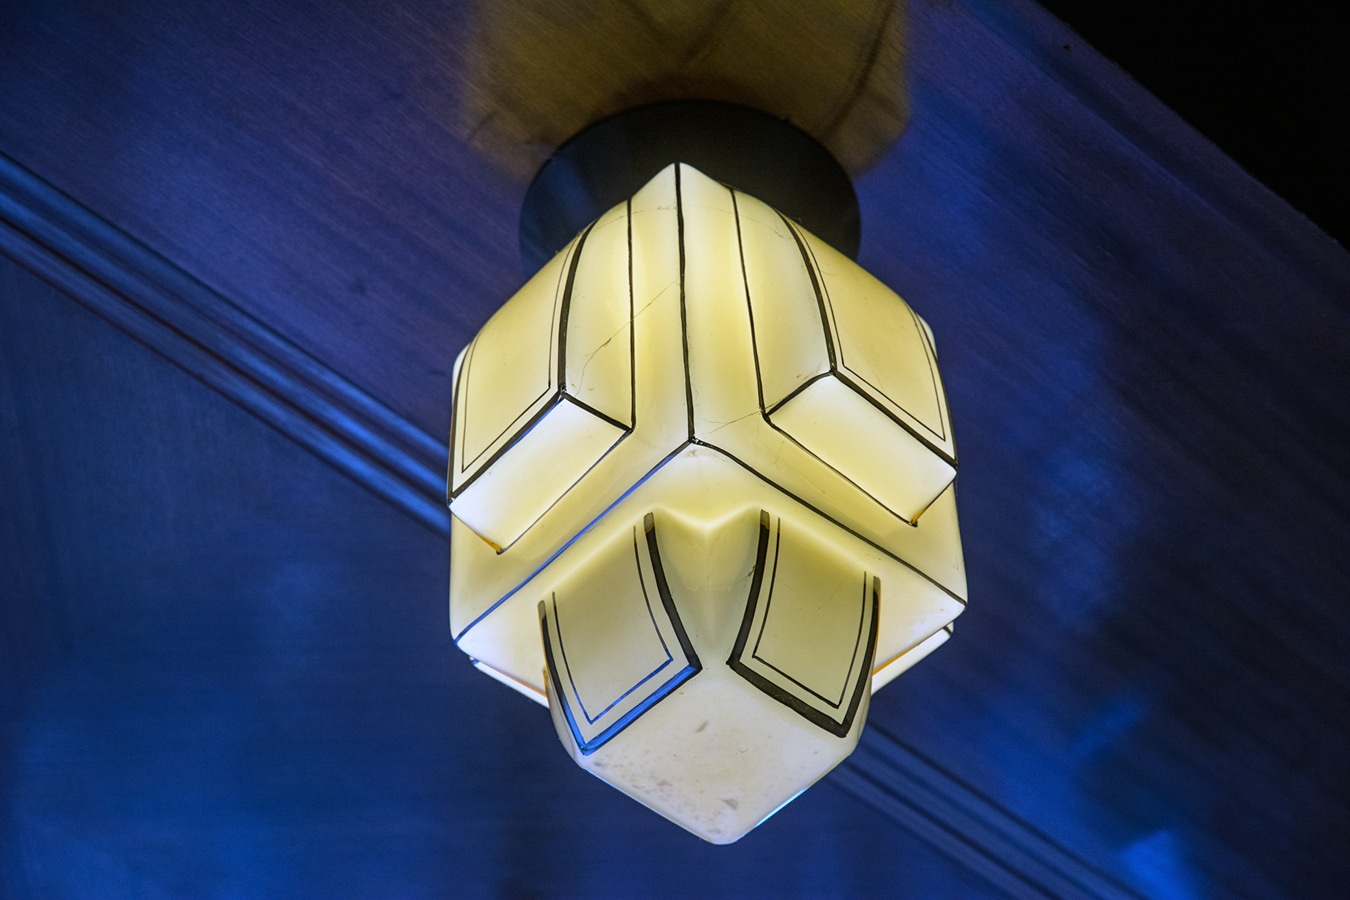 Loosovy interiéry v Plzni - Dochované originální svítidlo v arkýři salonu v bytě Krausových